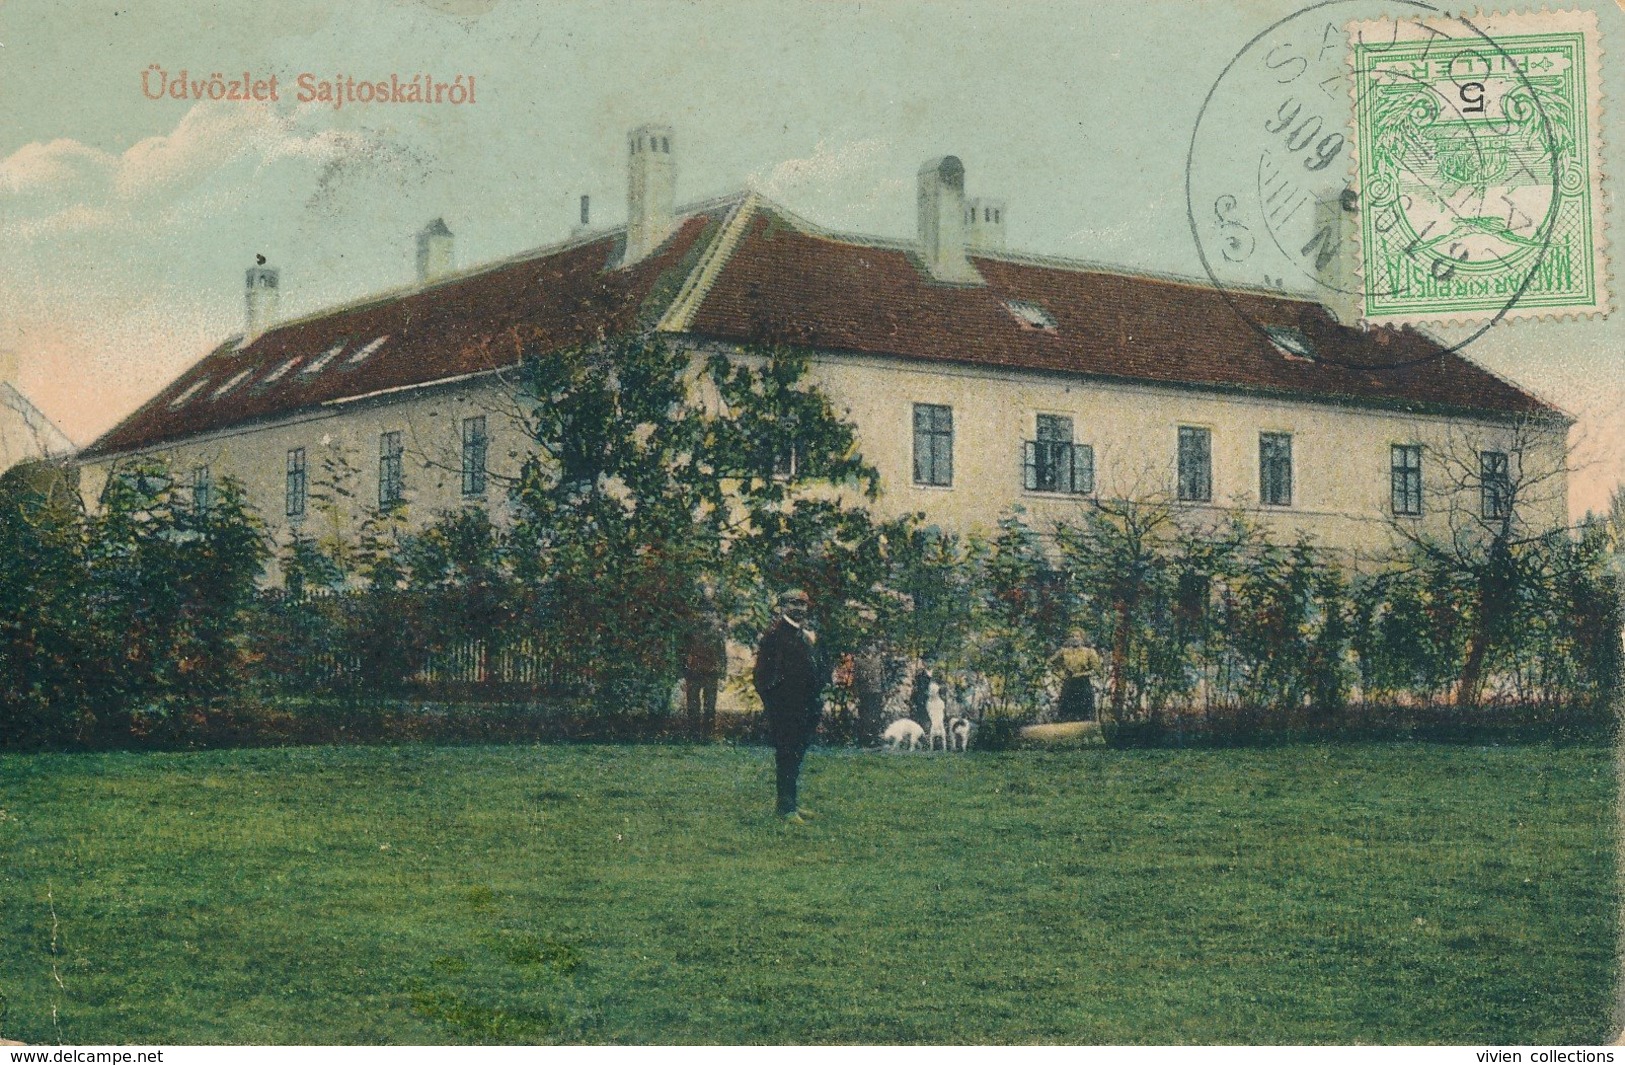 Udvözlet (Hongrie) Sajtos Kalrol - Circulée 1909 De Sautoskal - Hongrie